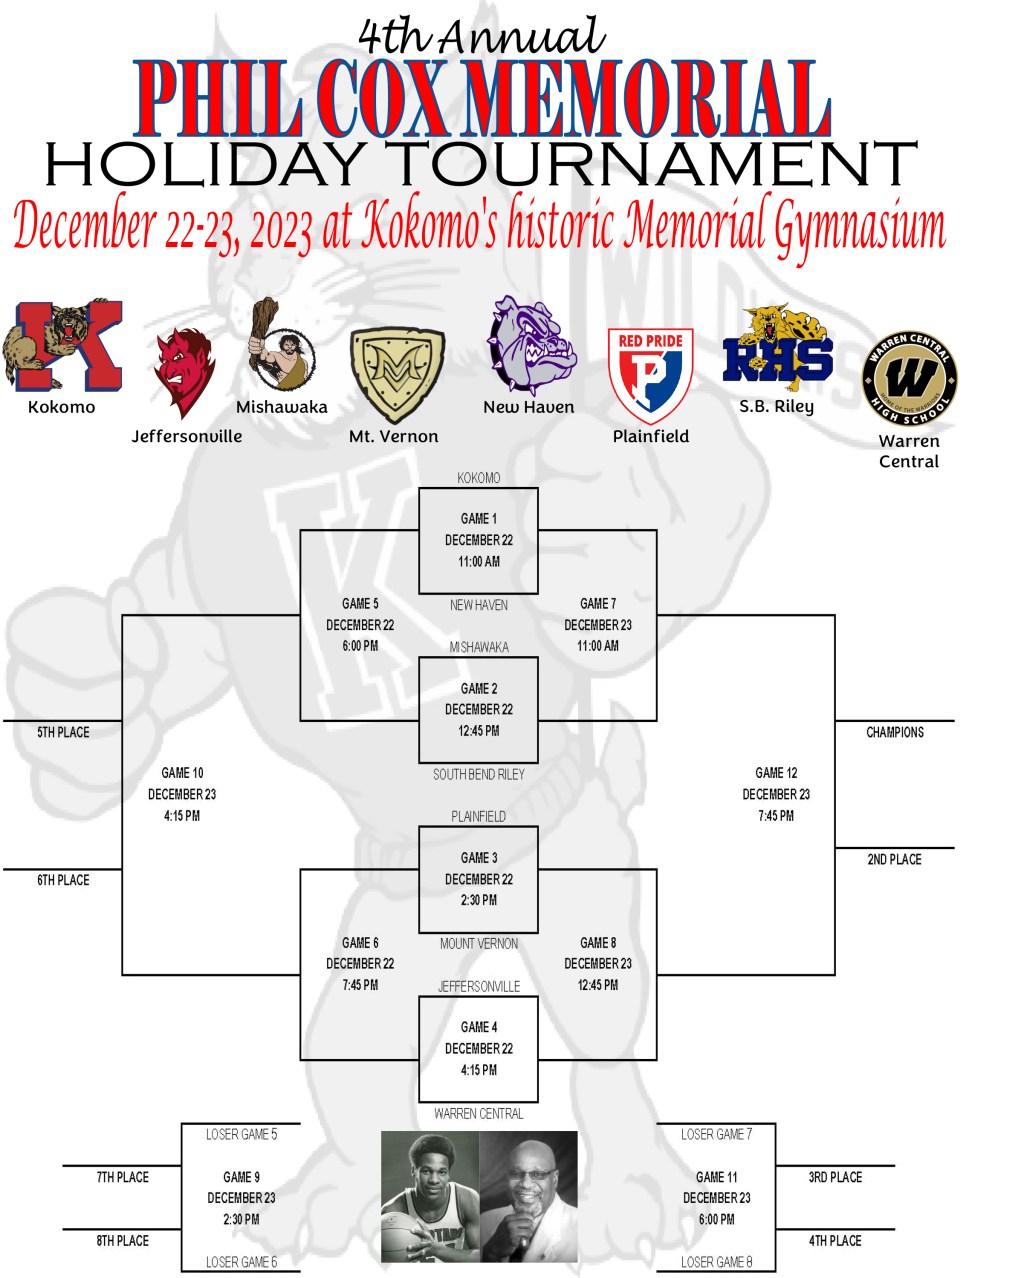 Phil Cox Memorial Holiday Tournament - Quarterfinals Live Blog